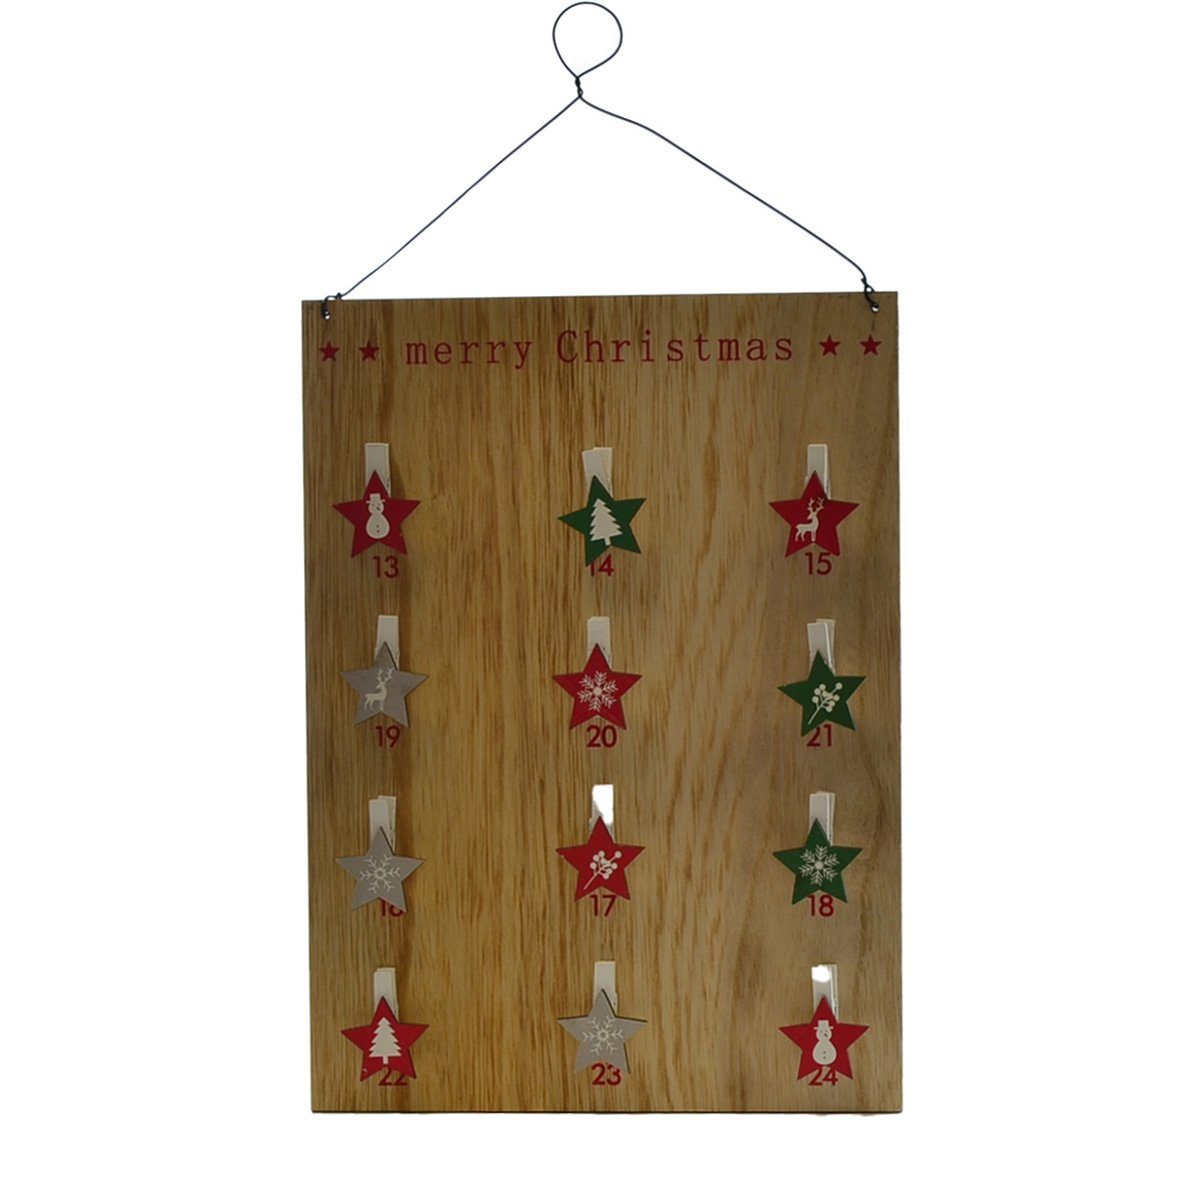 Deko Holz Dekoklammer Weihnachtskalender mit Beidseitig Sternchen, Seitig Adventskalender 2 Dragimex